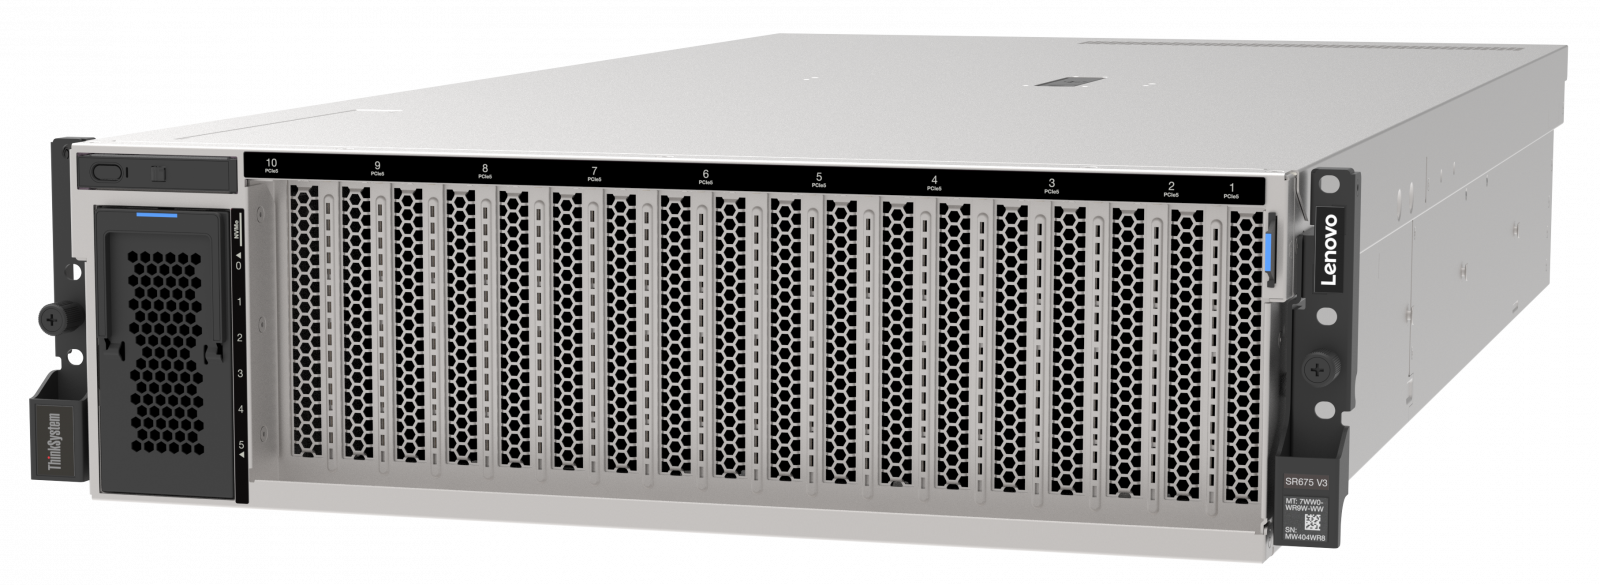 Сервер Lenovo ThinkSystem SR675 V3 (7D9QCTO1WW). Конфигурируемая комплектация сервера